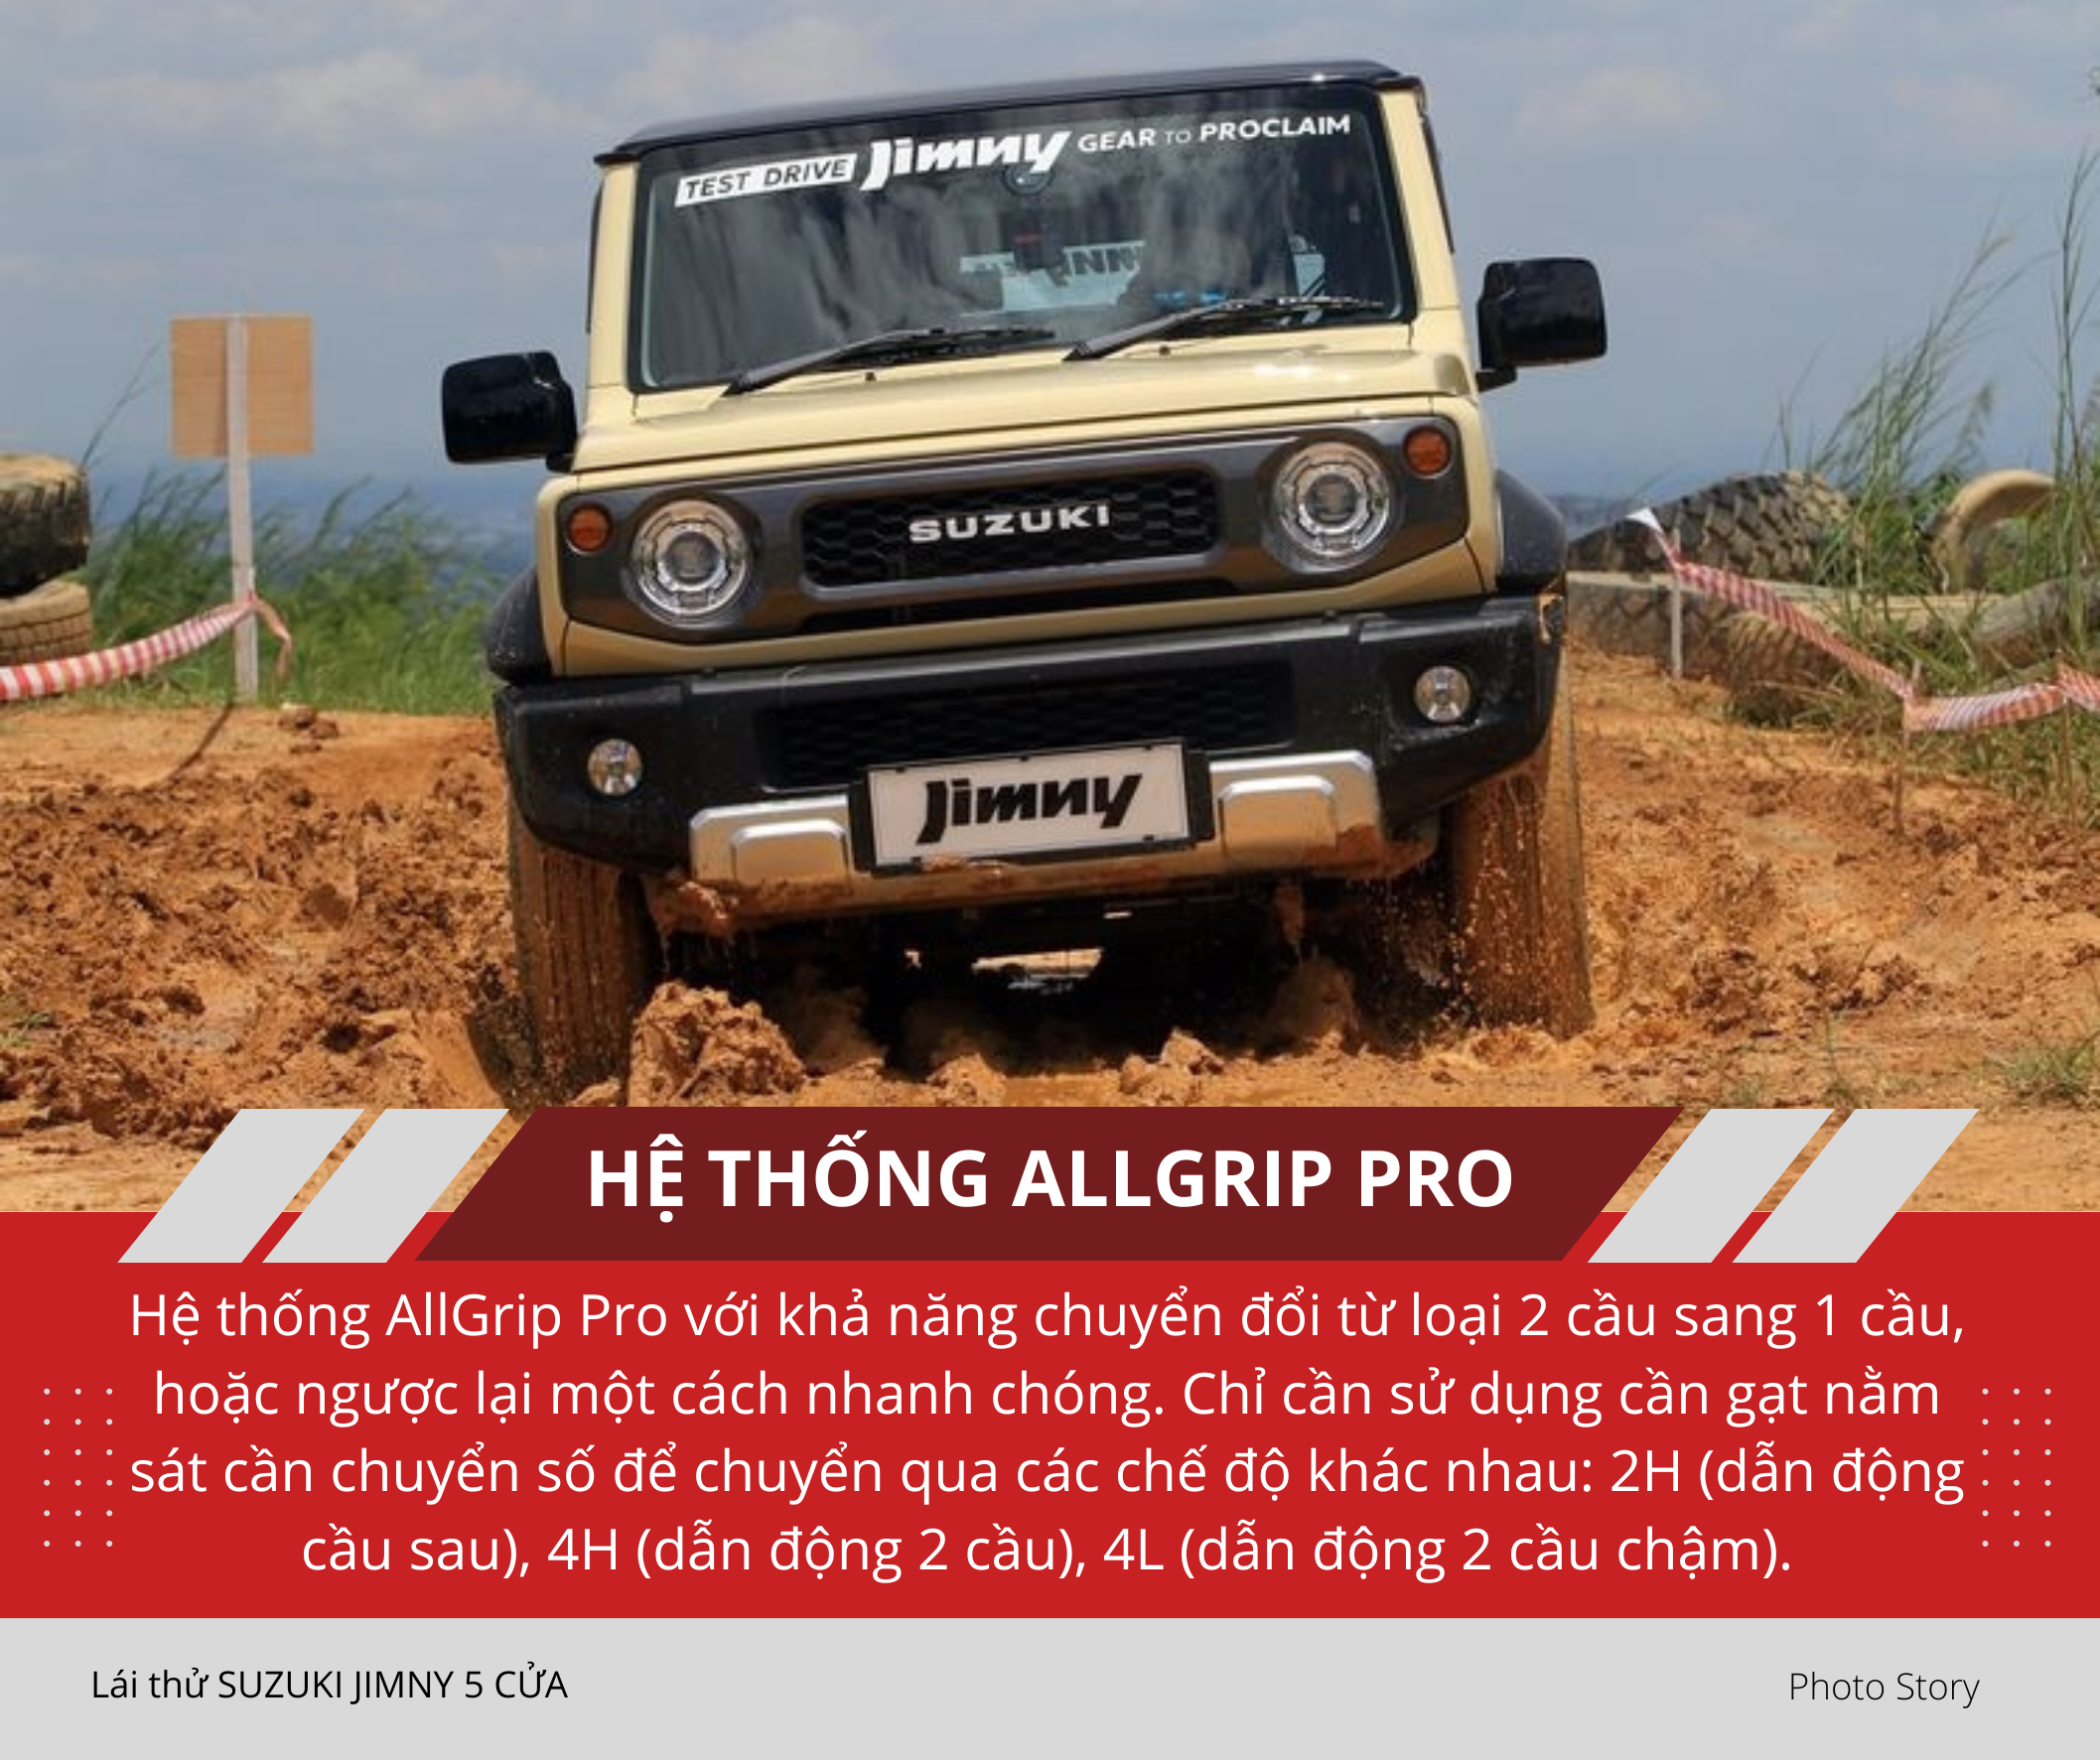 Mang Suzuki Jimny 5 cửa vào rừng 'hành hạ': Nhiều điểm hơn hẳn bản 3 cửa sắp ra mắt Việt Nam, thoải mái cho cả nhà cùng off-road - Ảnh 5.